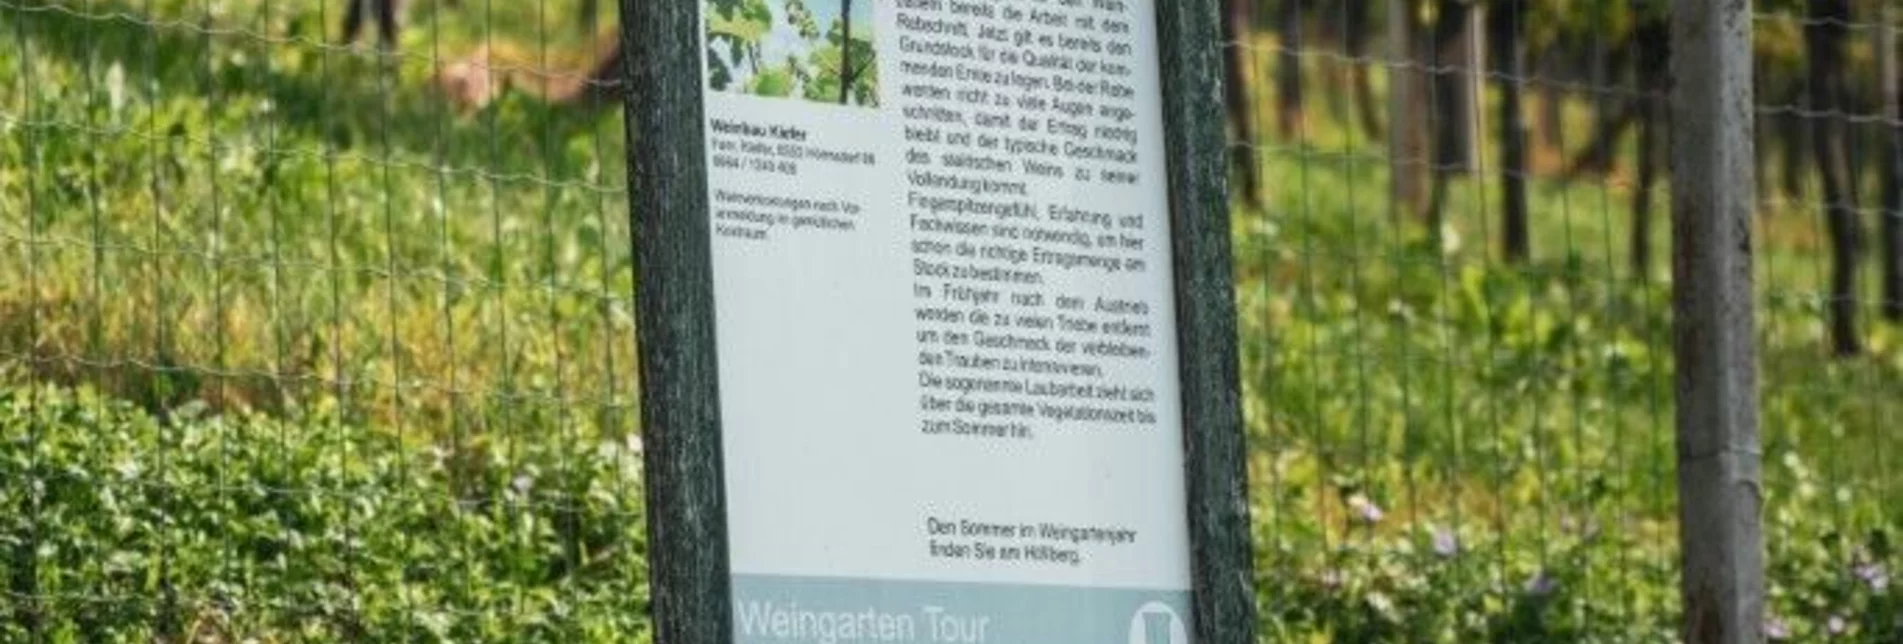 Wanderung Weingarten Tour – Tour 34 lt. WK „Von der Alm zum Wein“ - Touren-Impression #1 | © Südsteiermark